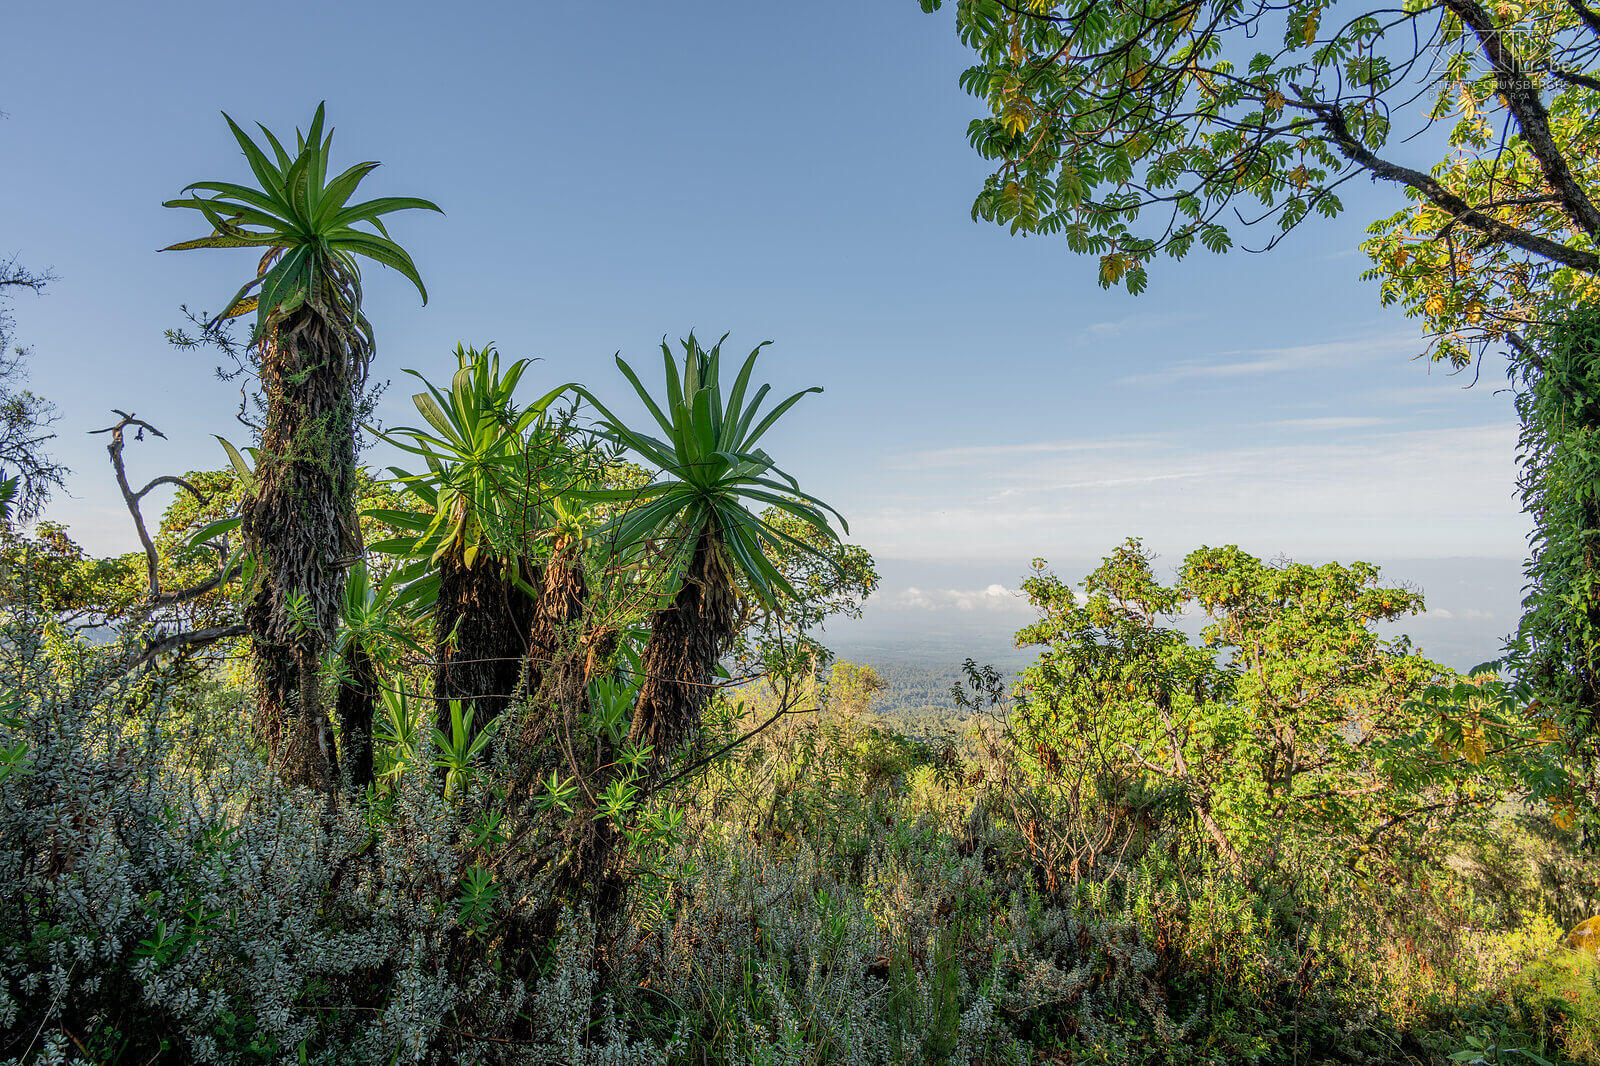 Mount Kenya Op Mount Kenya maakten we een pittige dagwandeling tot een hoogte van 3770 meter via de mooie Naro Moru route. We begonnen in de boszone die overgaat in bamboe en boven de 3000m in heide met unieke afro-alpine vegetatie. Stefan Cruysberghs